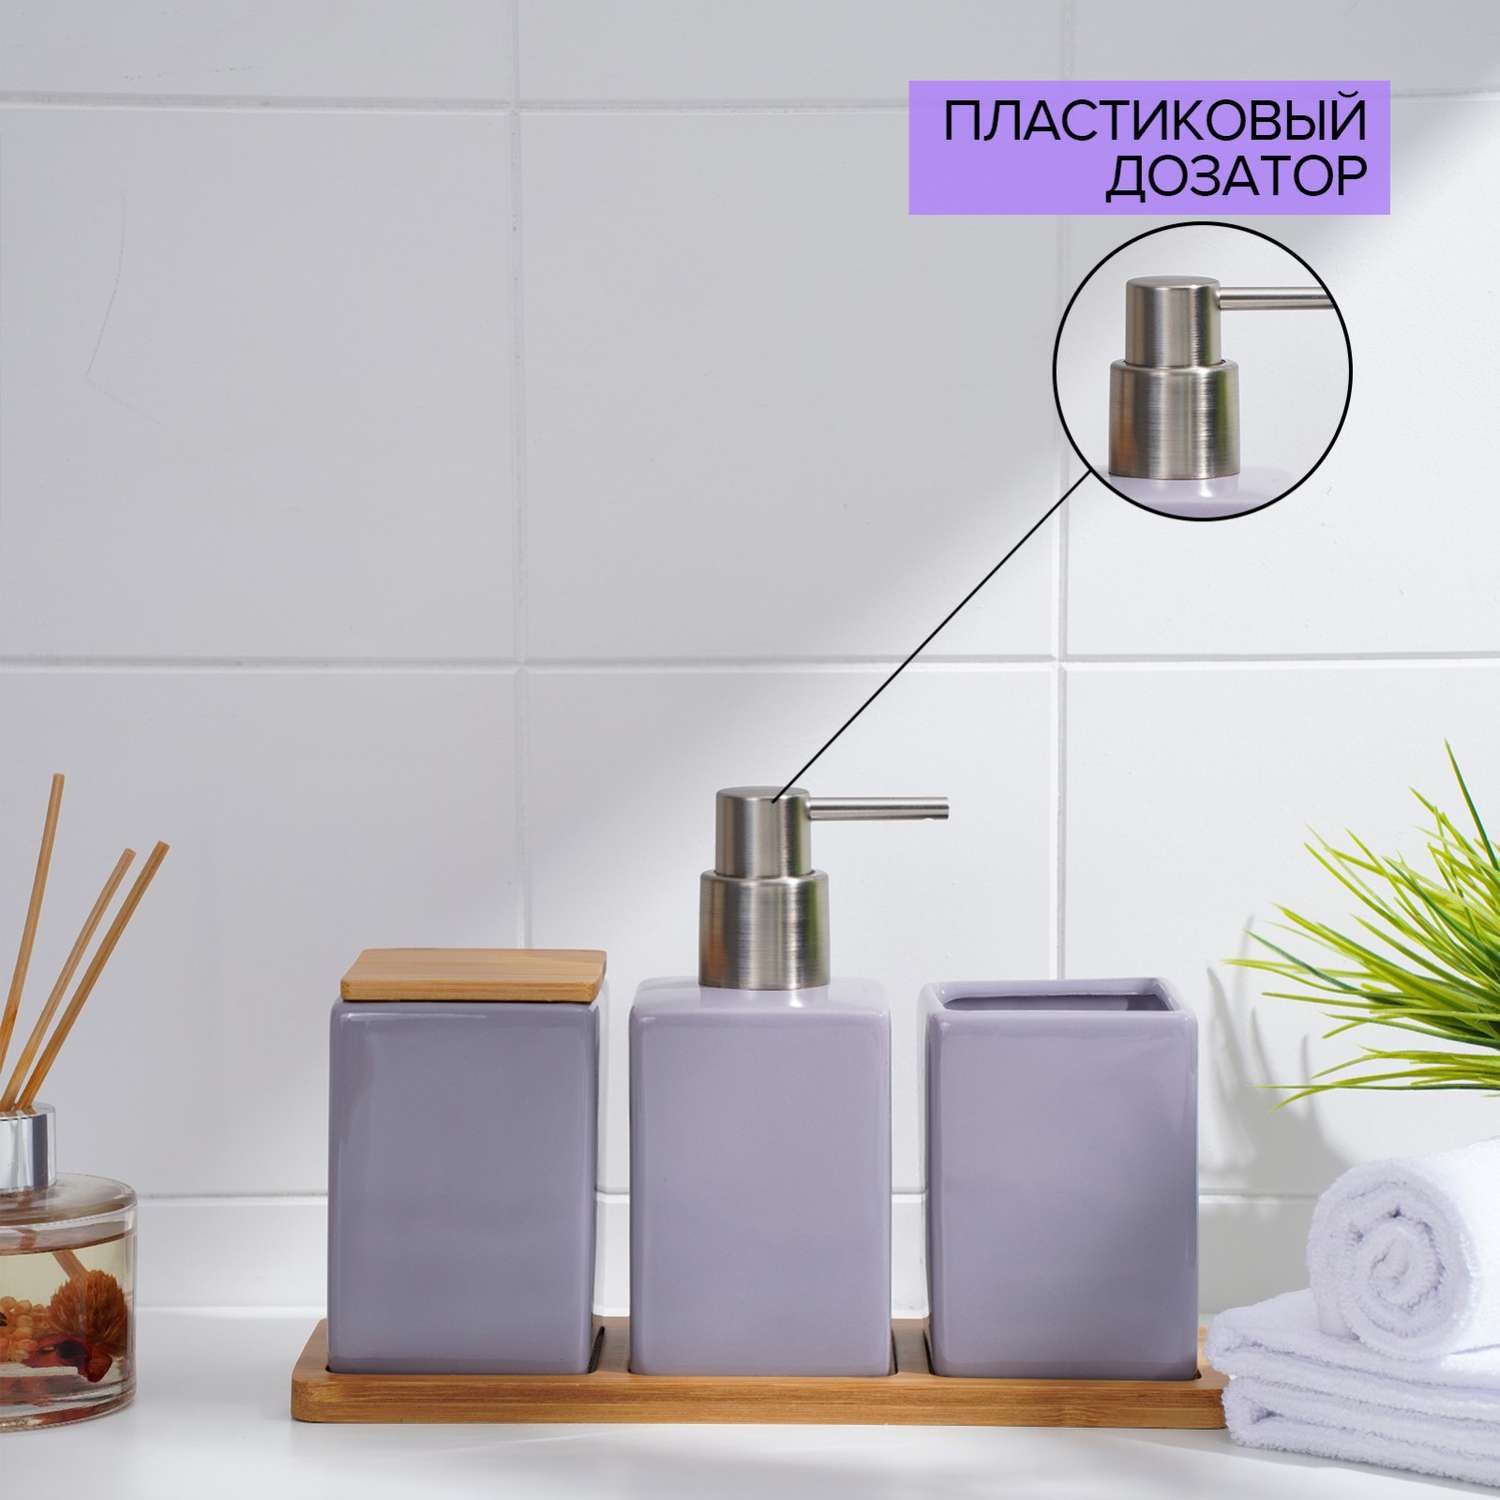 Набор SAVANNA аксессуаров для ванной комнаты - фото 4